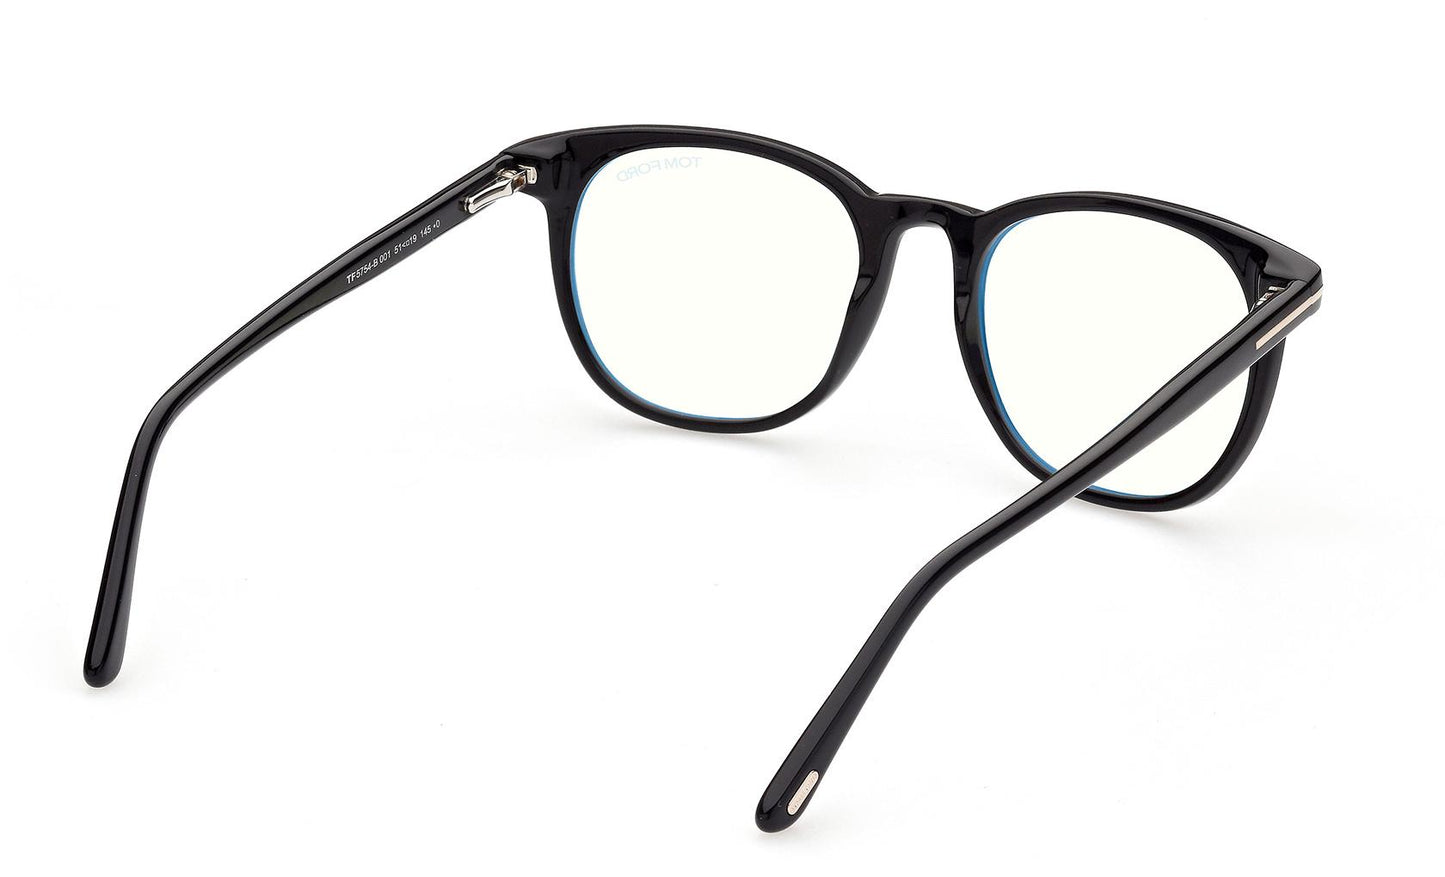 Tom Ford Eyeglasses FT5754/B 001